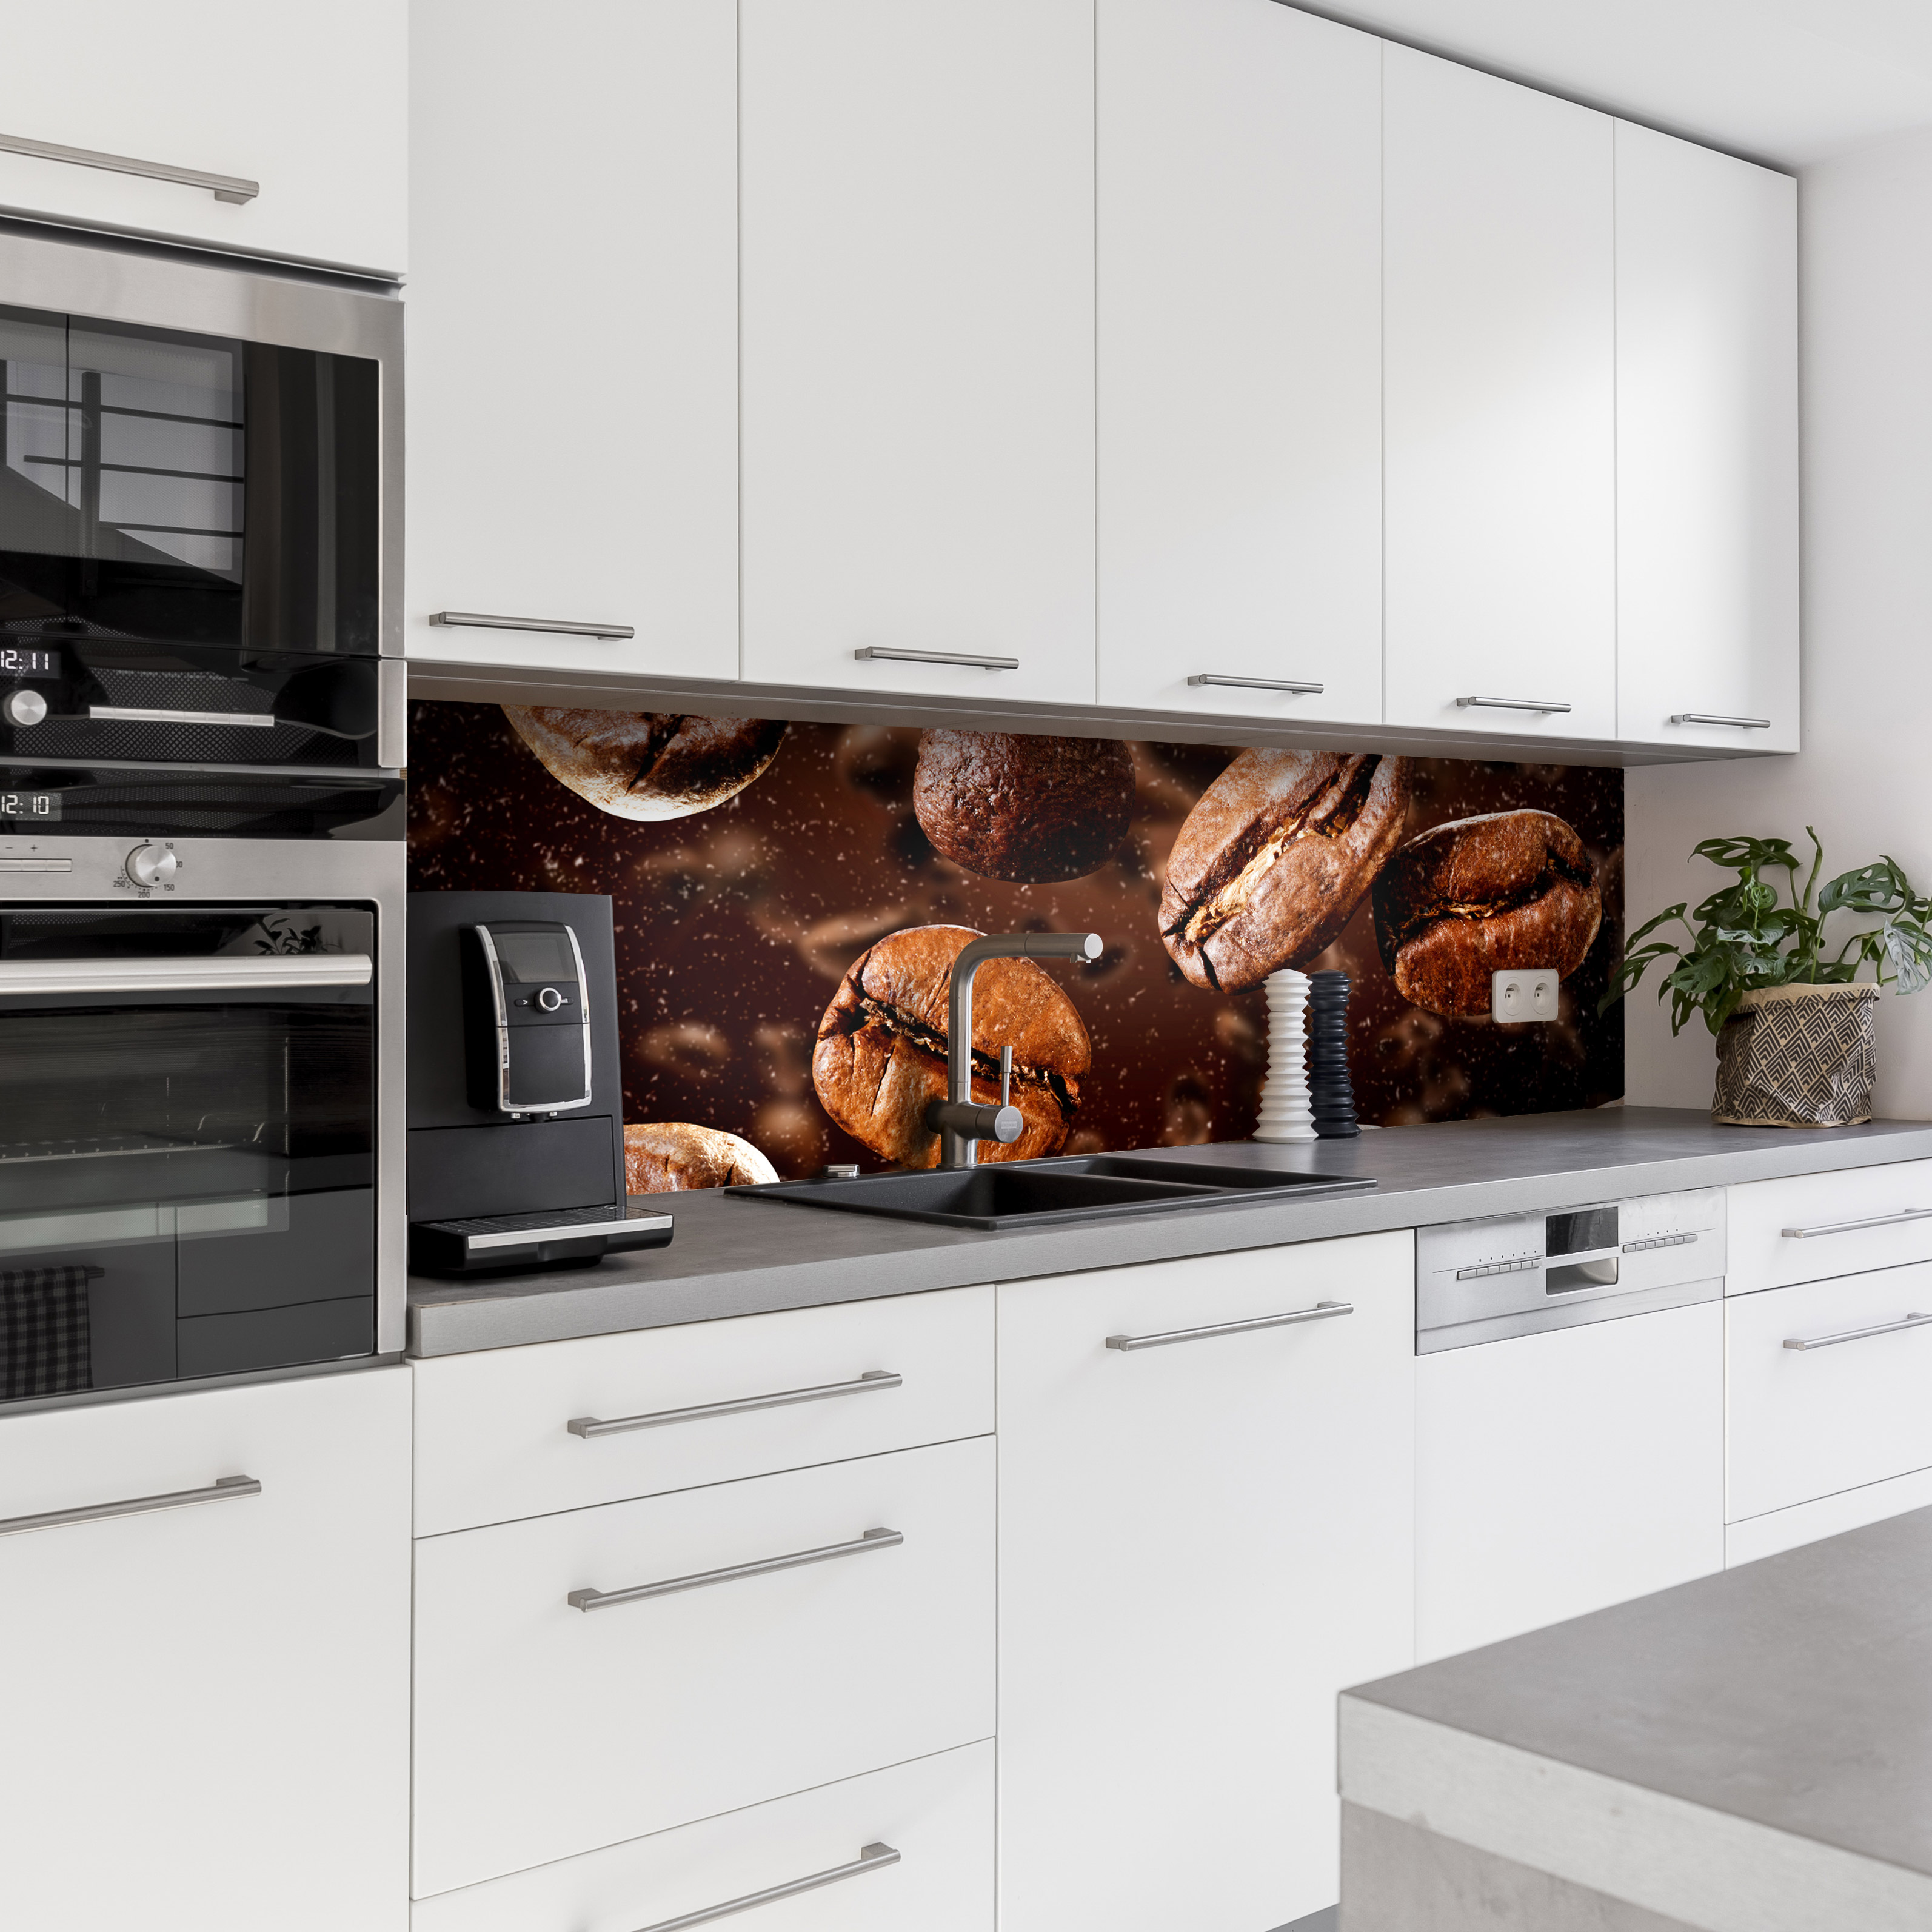 Küchenrückwand mit Kaffee V2 Motiv als Fliesenersatz und Spritzschutz